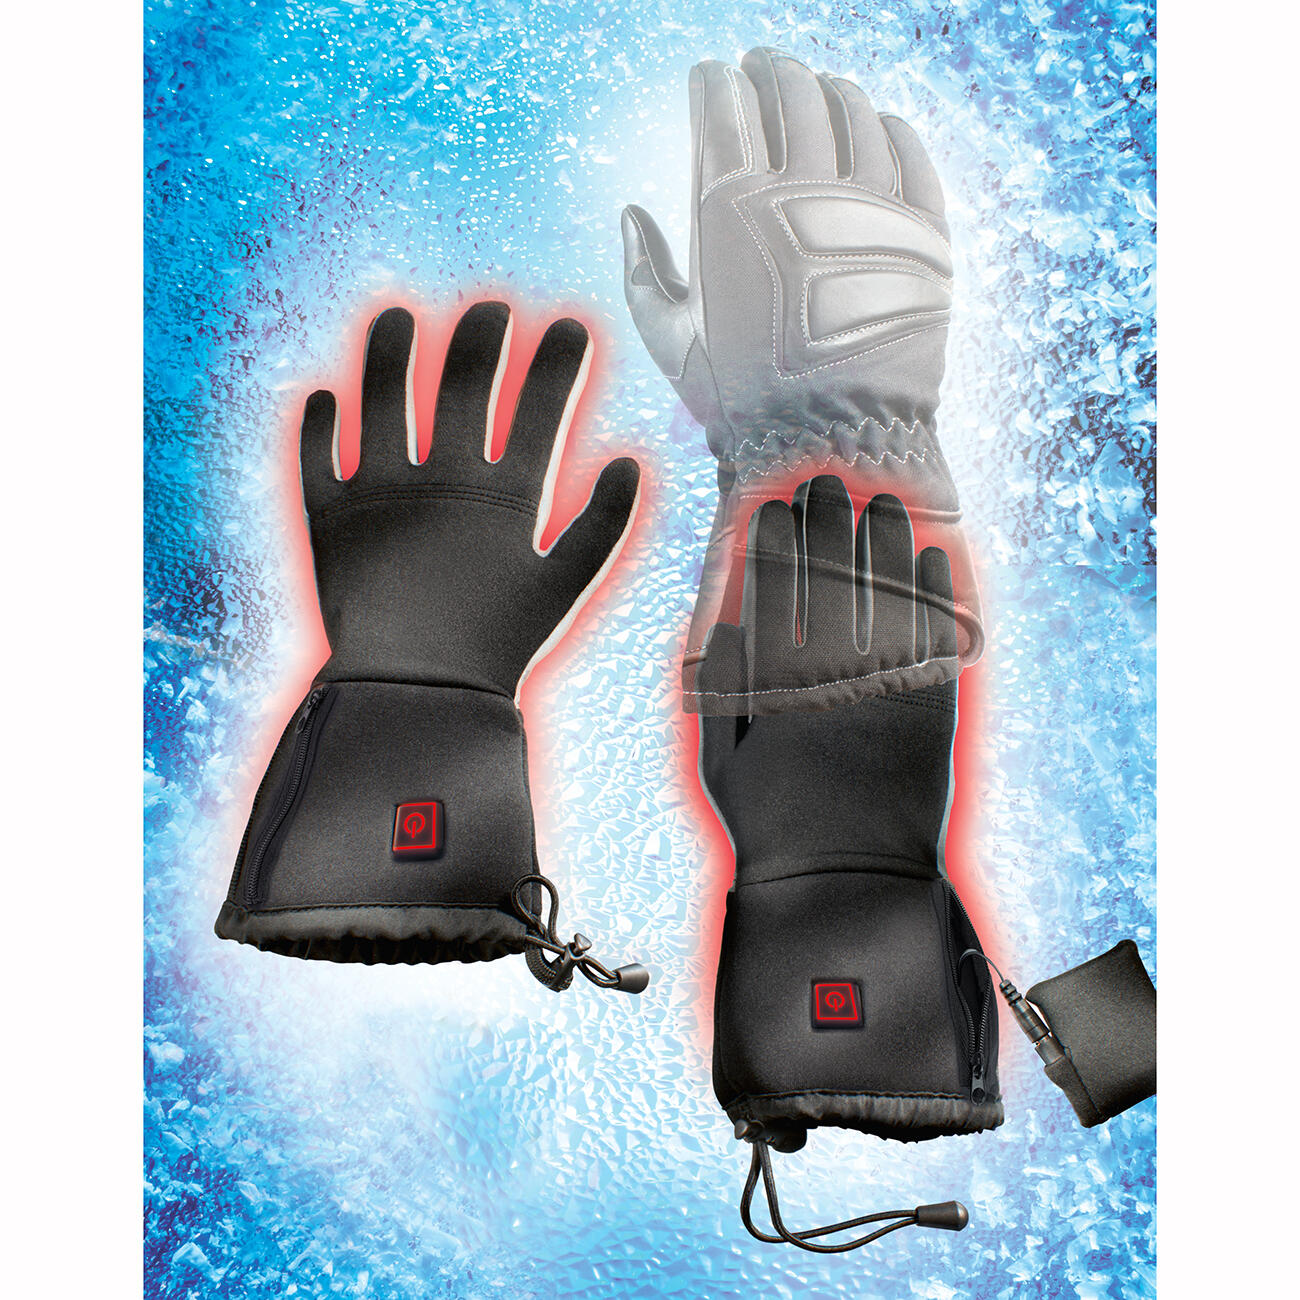 Camping Jagd Beheizte Handschuhe Wasserdicht Touchscreen Heizung Thermo Handschuhe zu Winter Outdoor Klettern Radfahren Snowboarden Damen Elektrische Beheizbare Handschuhe mit Wiederaufladbare 